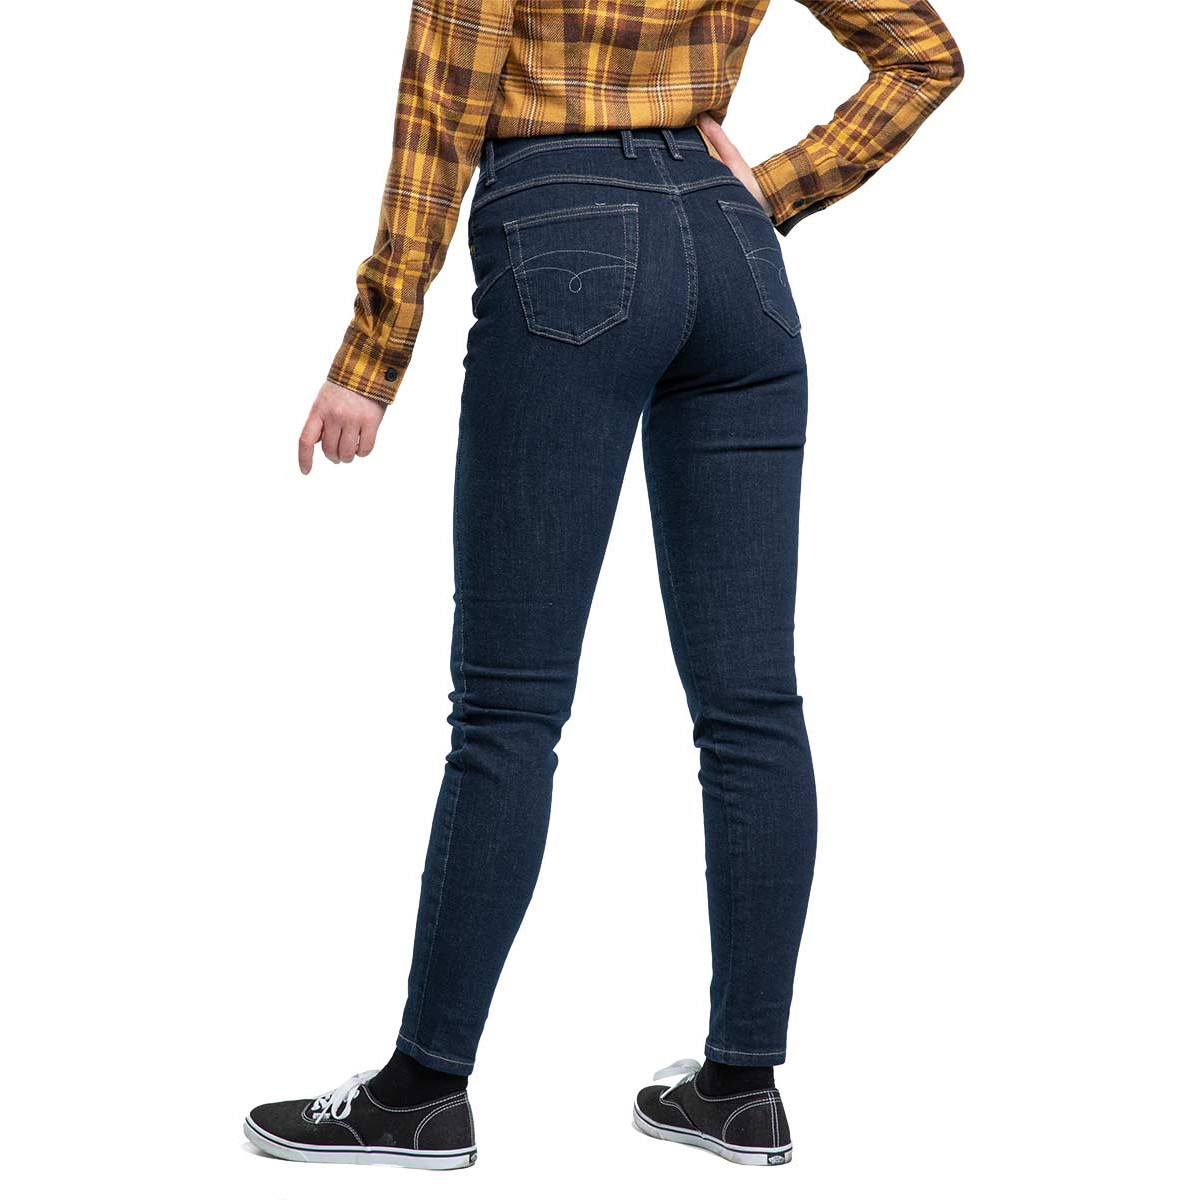 ladies tartan skinny jeans